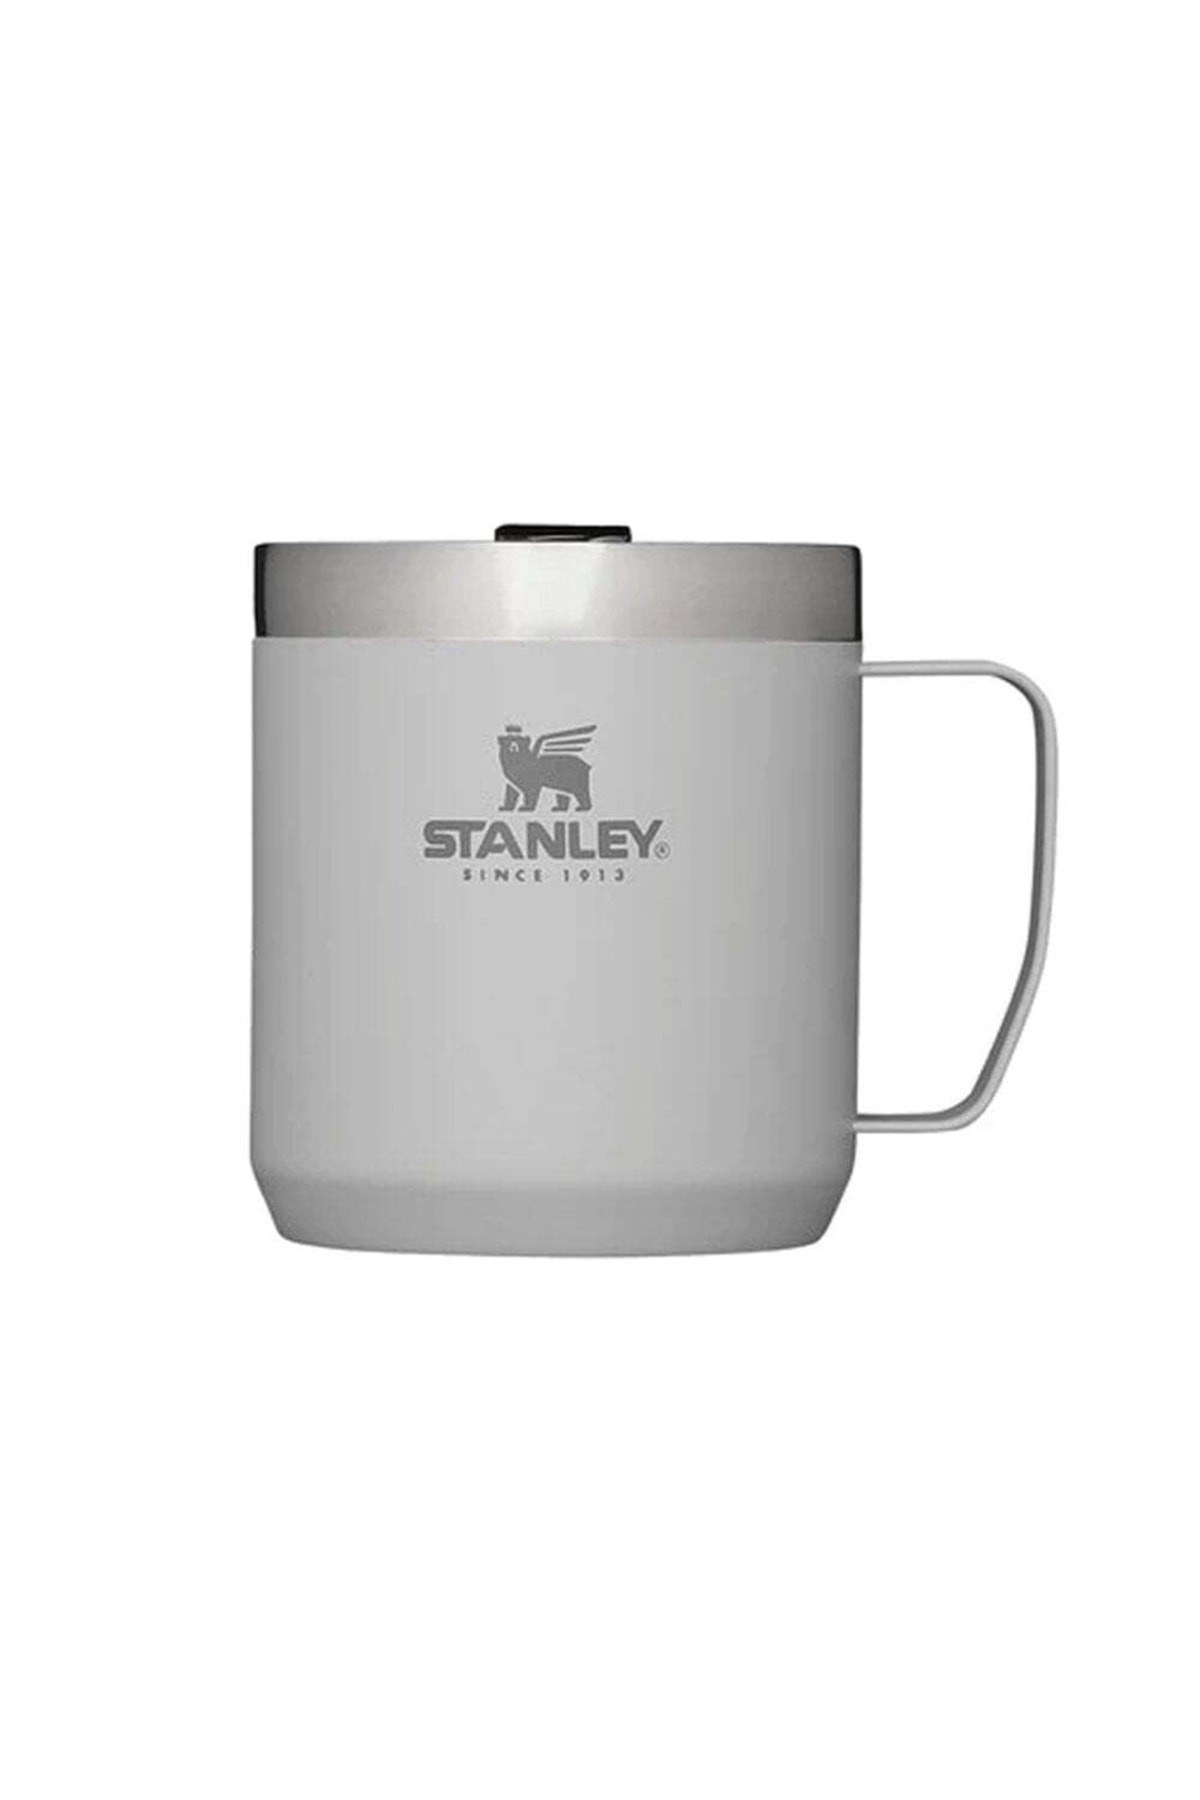 لیوان قمقمه استنلس استیل کلاسیک 0.35 لیتری سفید استنلی Stanley